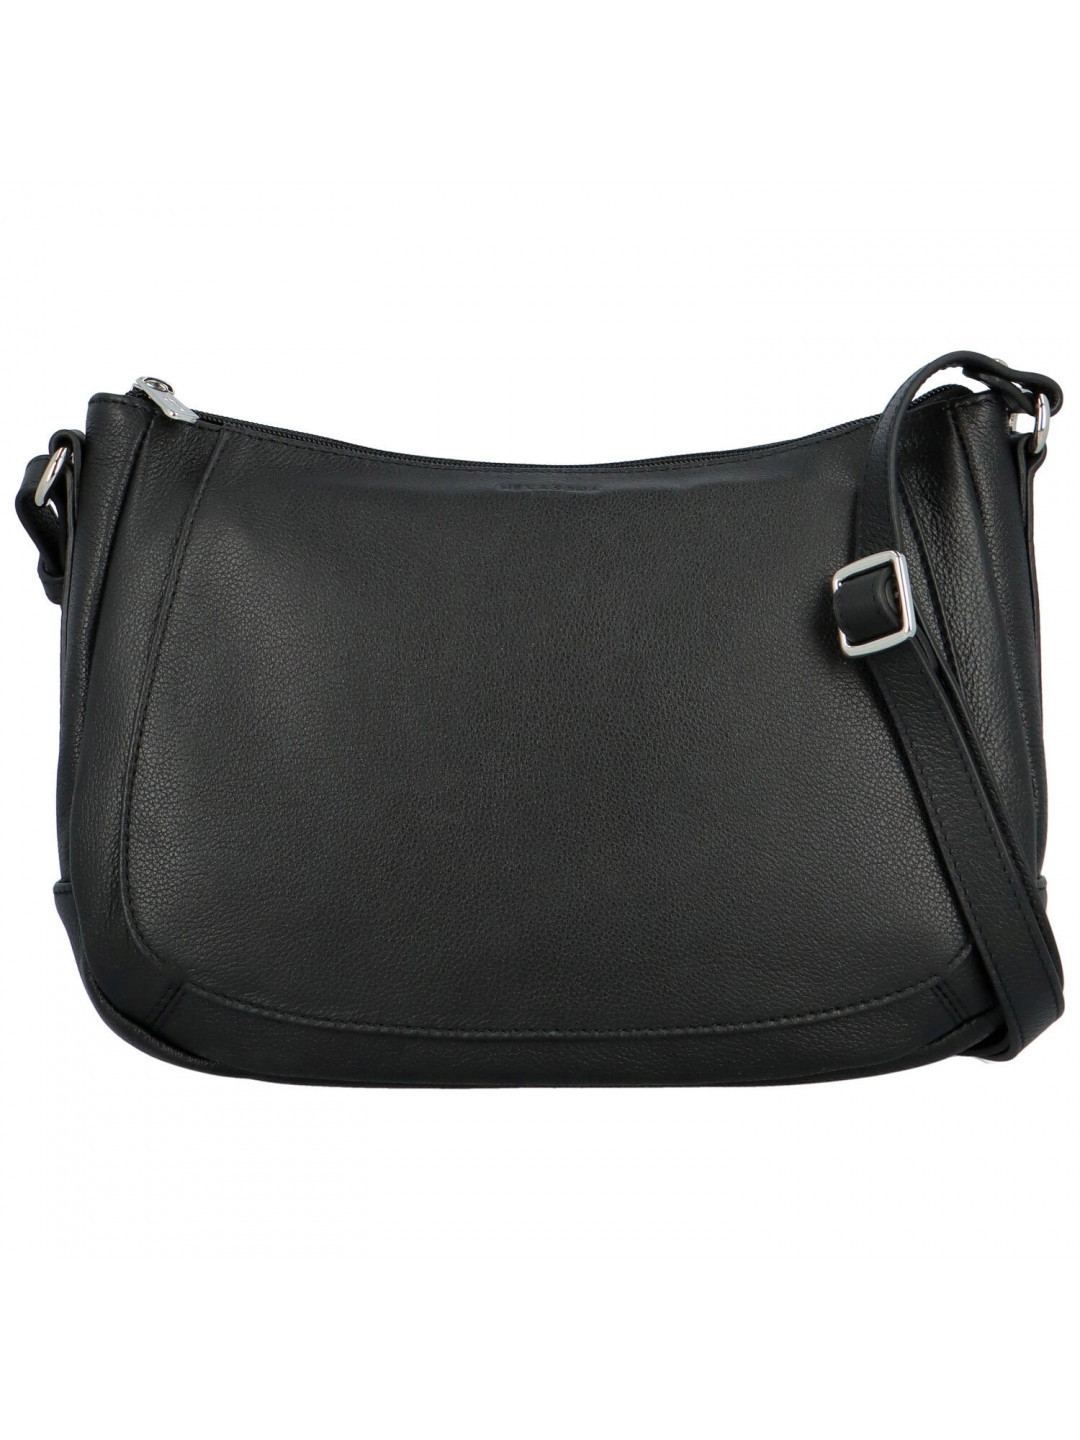 Dámská kožená kabelka přes rameno černá – Hexagona Chanel